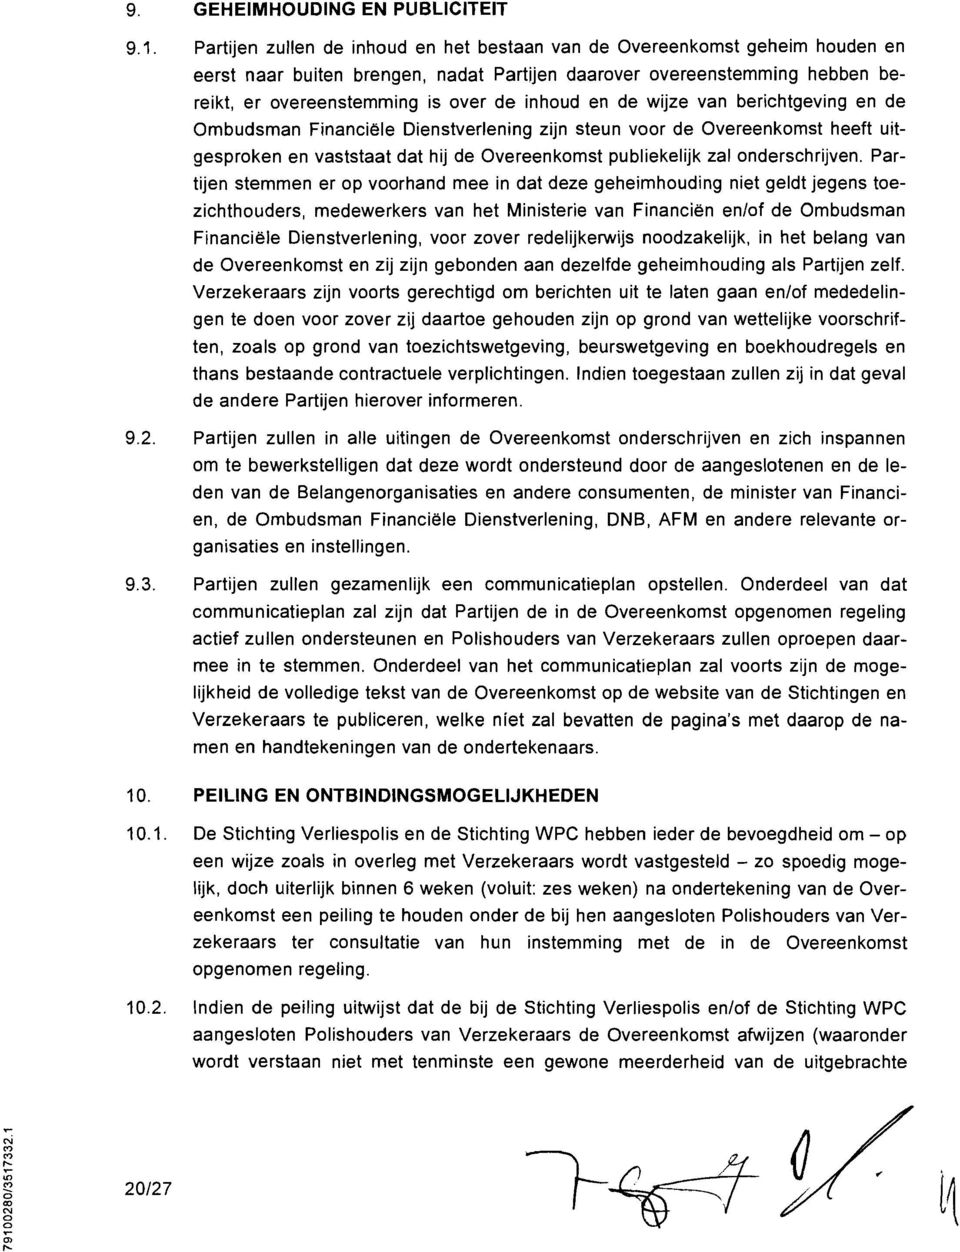 vn berichtgeving en de Ombudsmn Finnciele Dienstverlening zijn steun voor de Overeenkomst heeft uitgesprken en vststt dt hij de Overeenkomst publiekelijk zl onderschrijven.